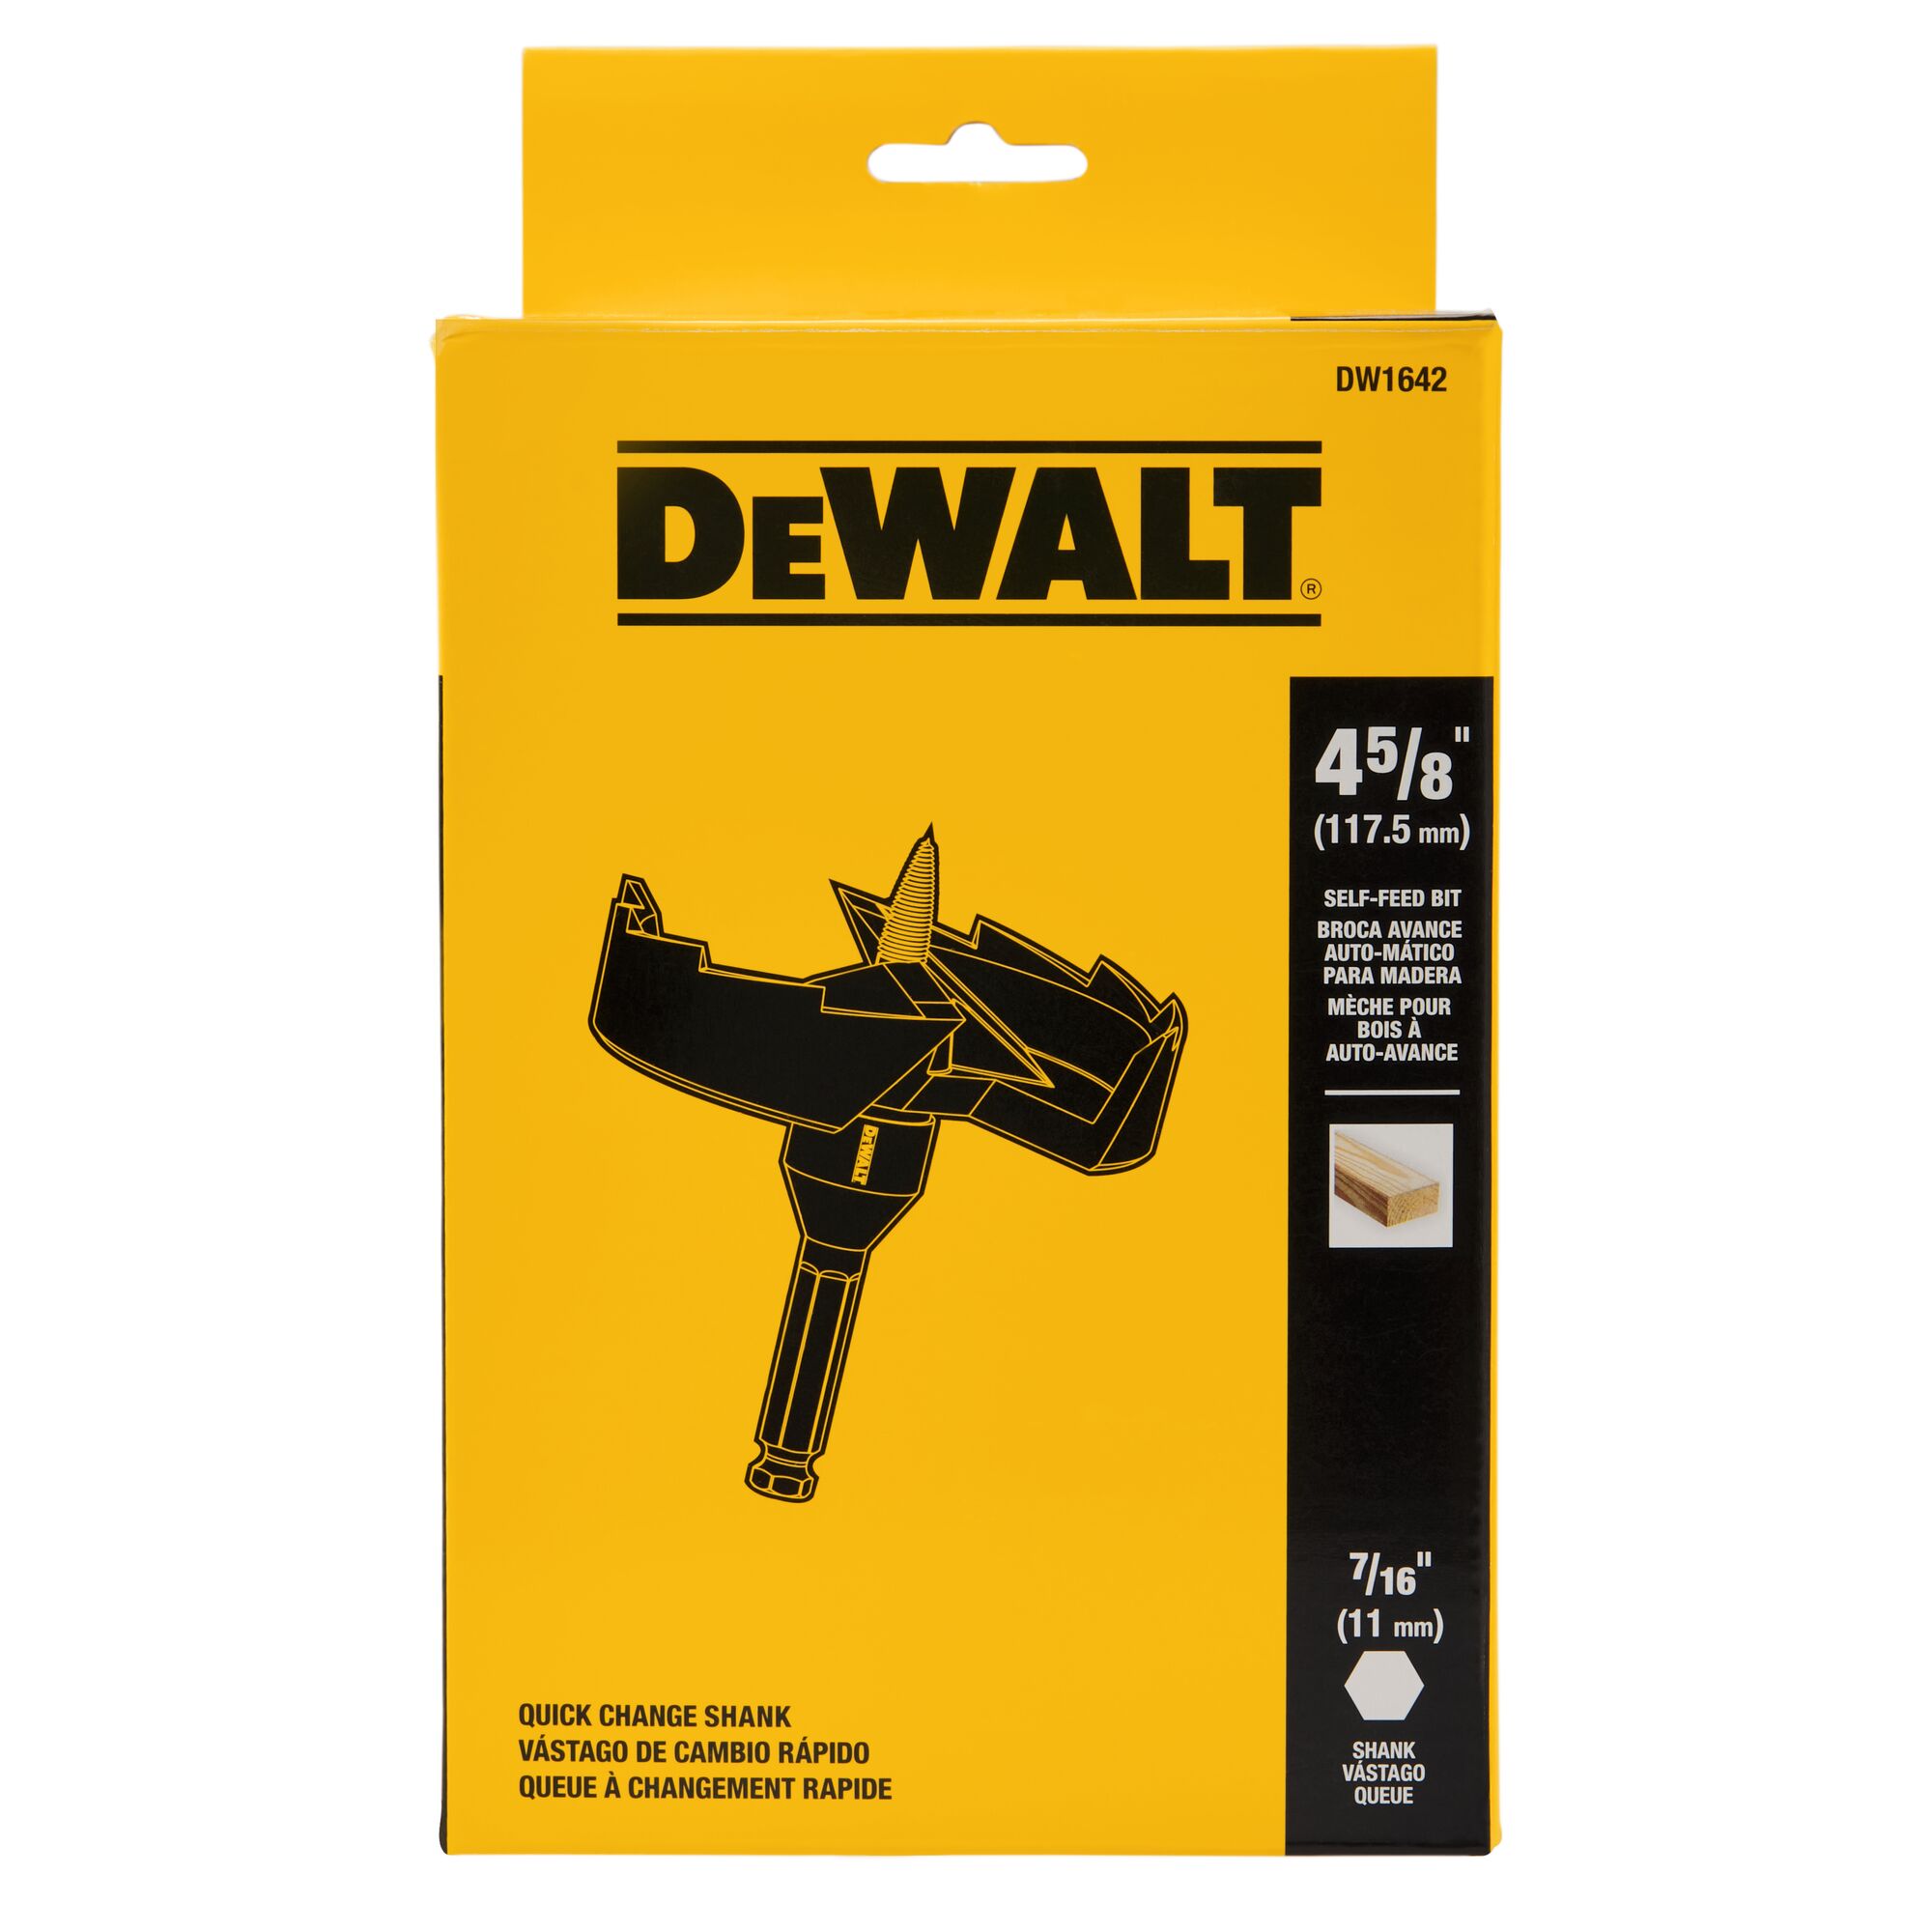 Dewalt 4-5/8 inch Carbide Wood Cutter Hole Saw Drill Bit Power Tool Attachment 